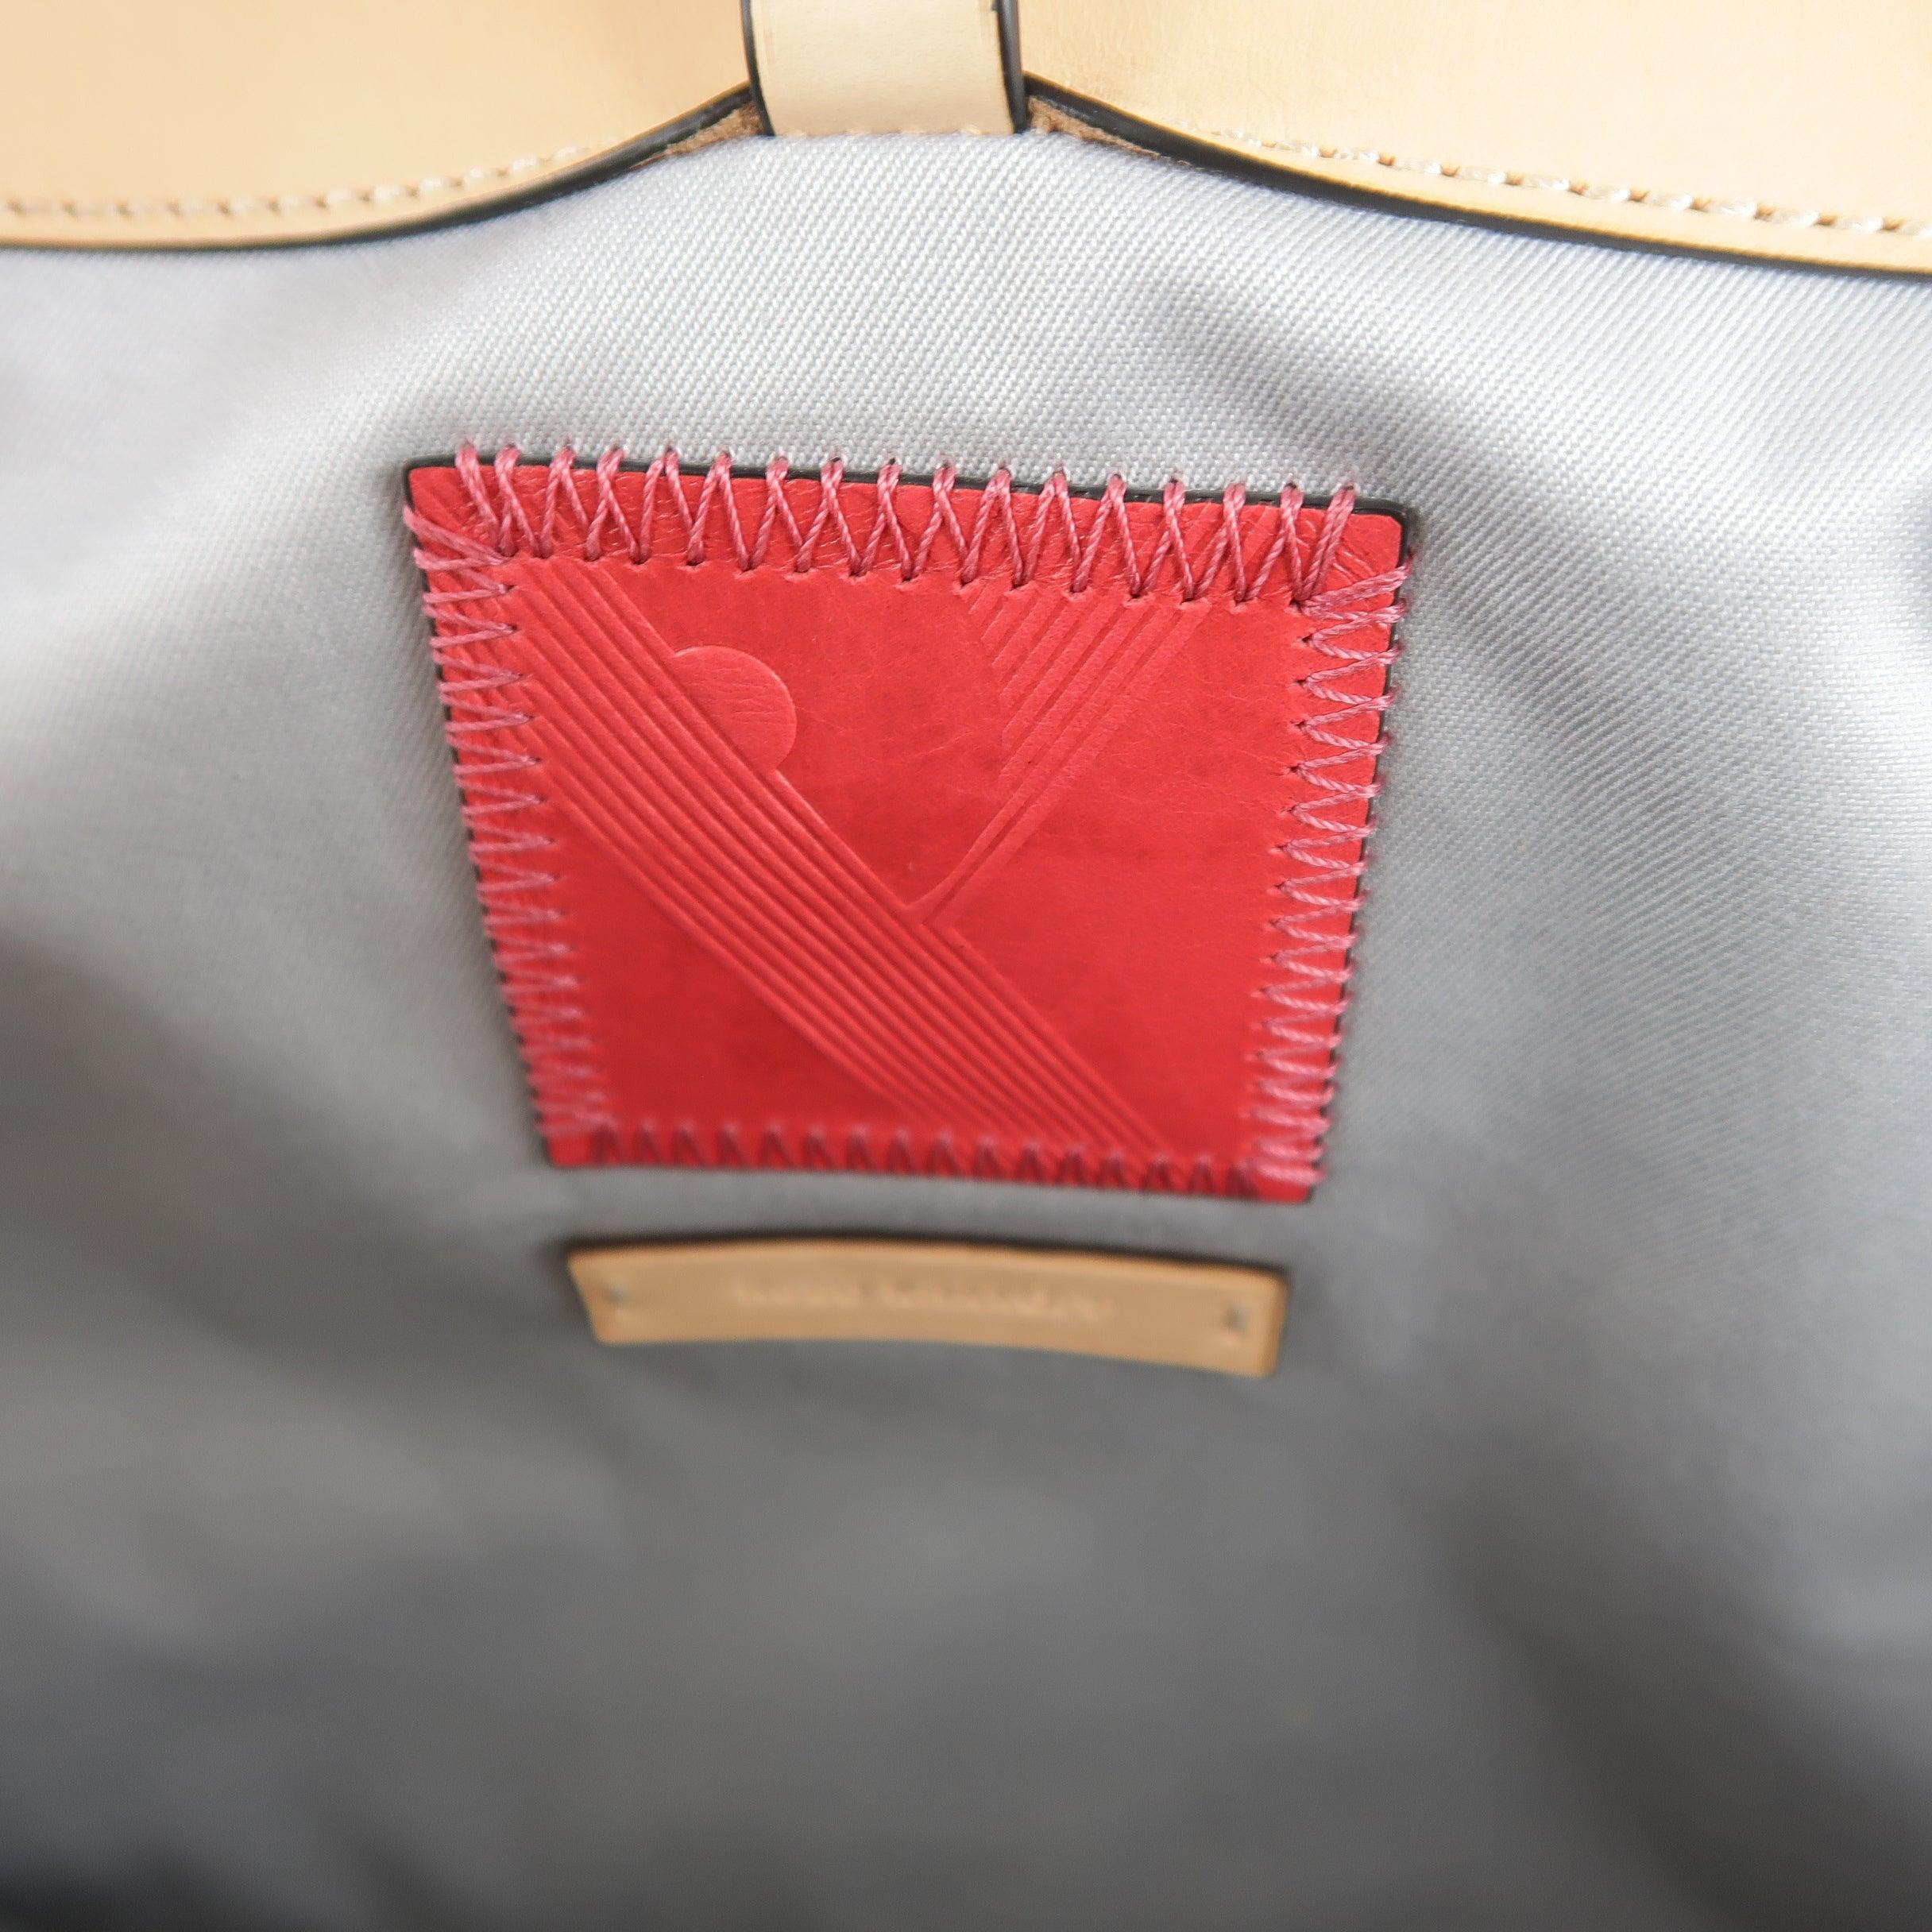 REED KRAKOFF Red Black & Light Pink Leather Tote Handbag For Sale 5